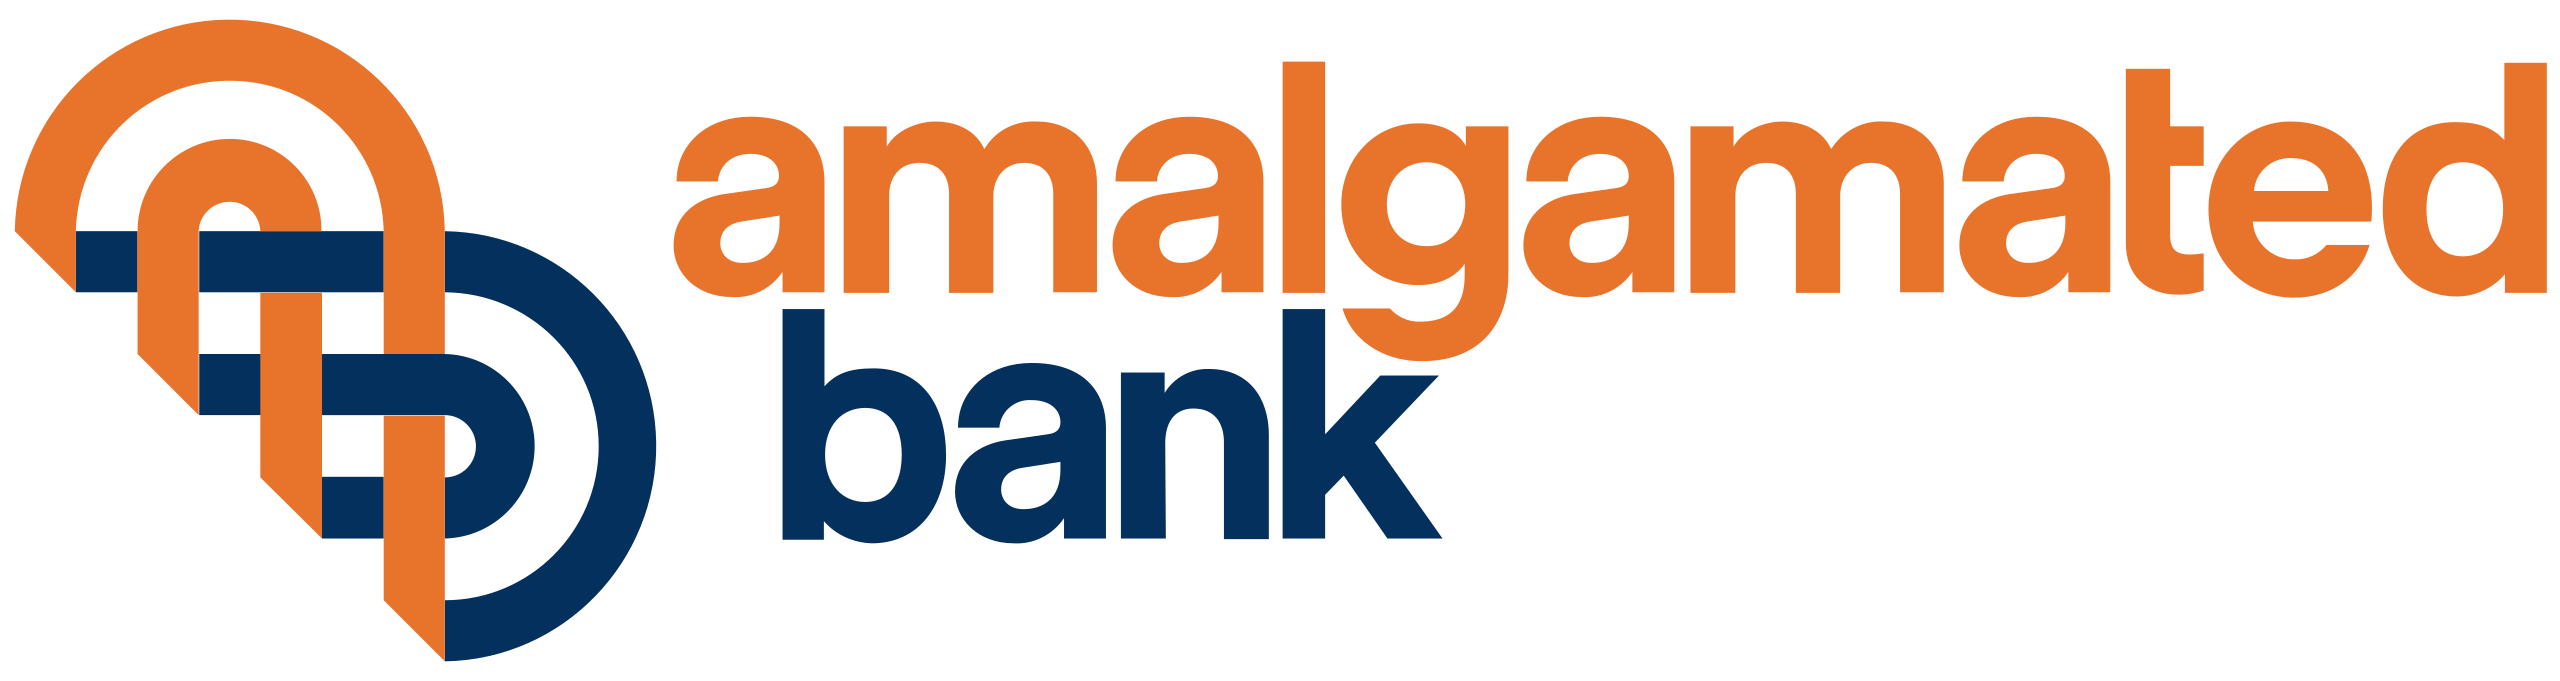 Amalgamated Bank logo
